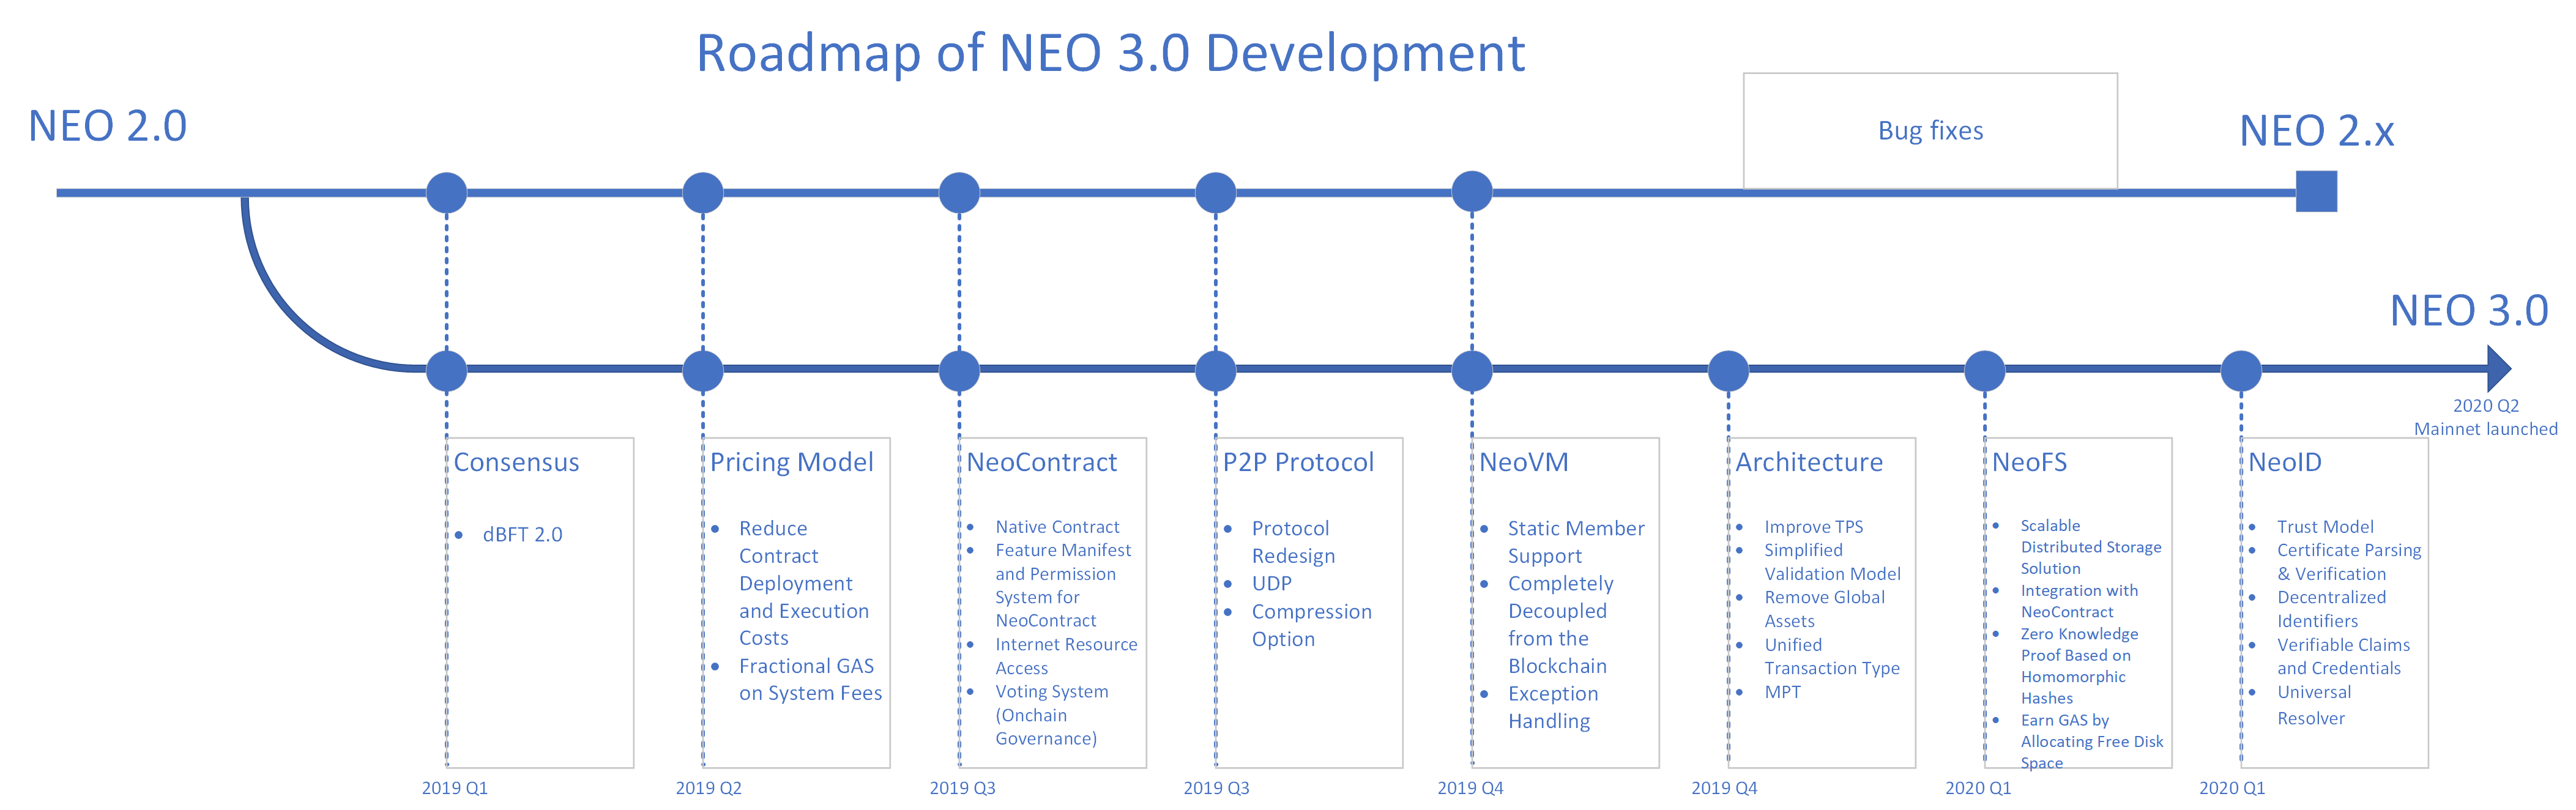 Neo 3.0 เปิดตัวบนเครือข่ายบล็อกเชนใหม่ เน้นใช้งานเชิงพาณิชย์ขนาดใหญ่ ผู้ใช้งานจำเป็นต้องแปลงโทเคนจึงจะใช้งานได้